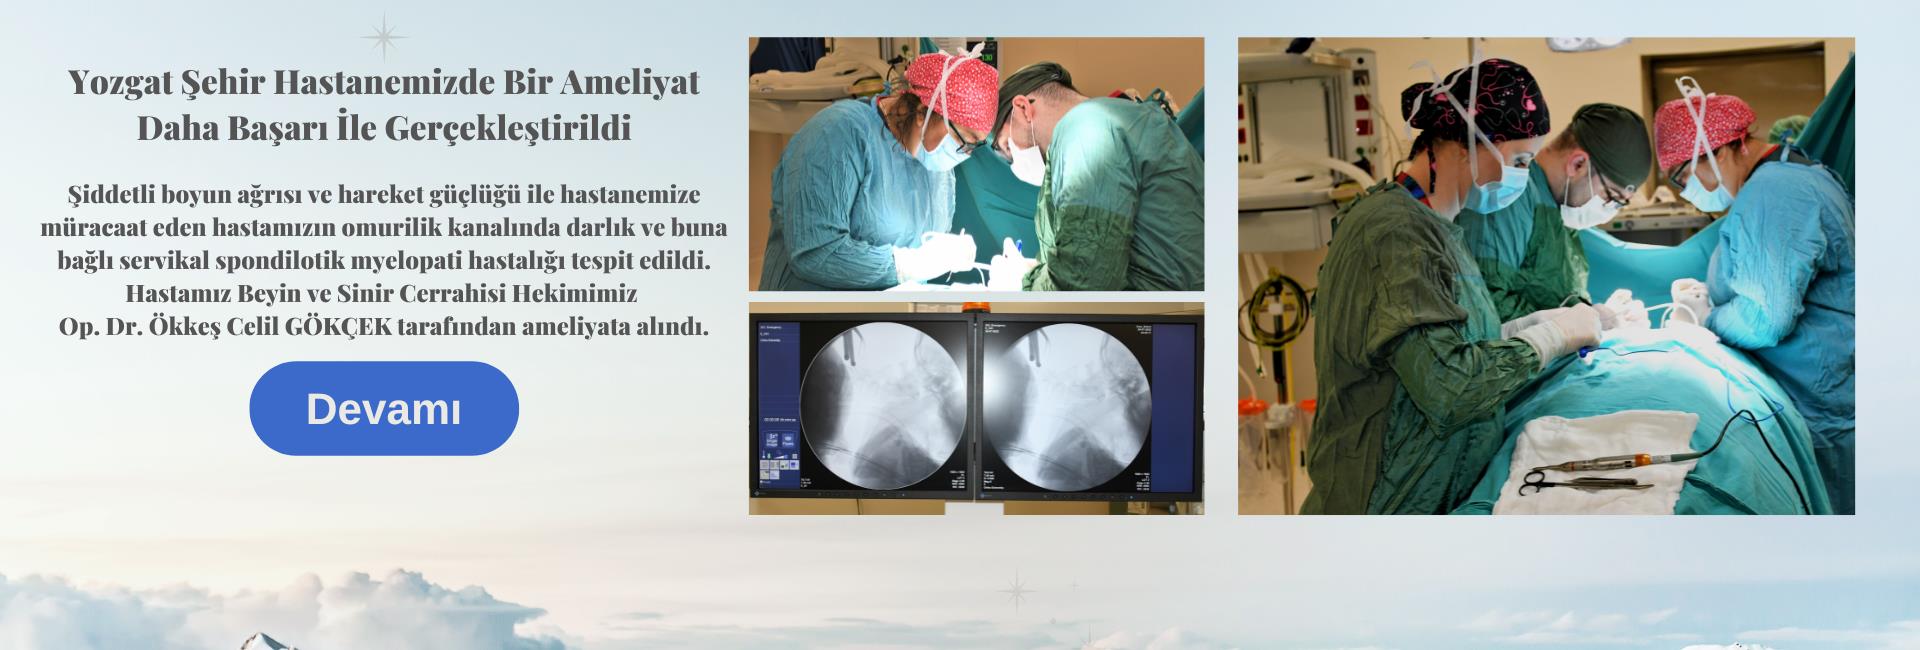 Yozgat Şehir Hastanemizde Bir Ameliyat Daha Başarı İle Gerçekleştirildi